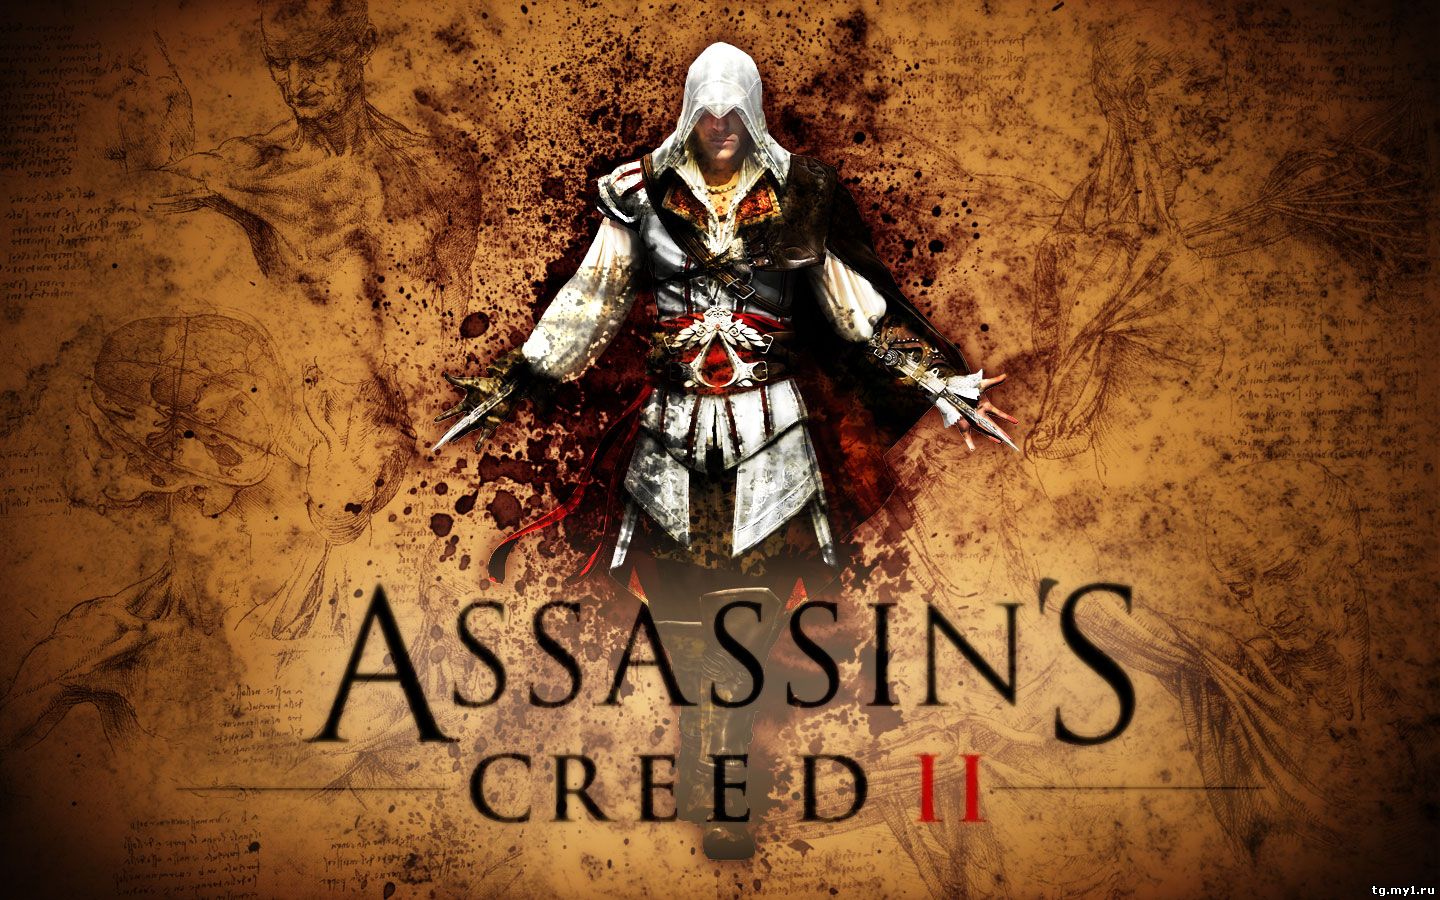 Assassin's Creed 2 UBI KEY RGION EU